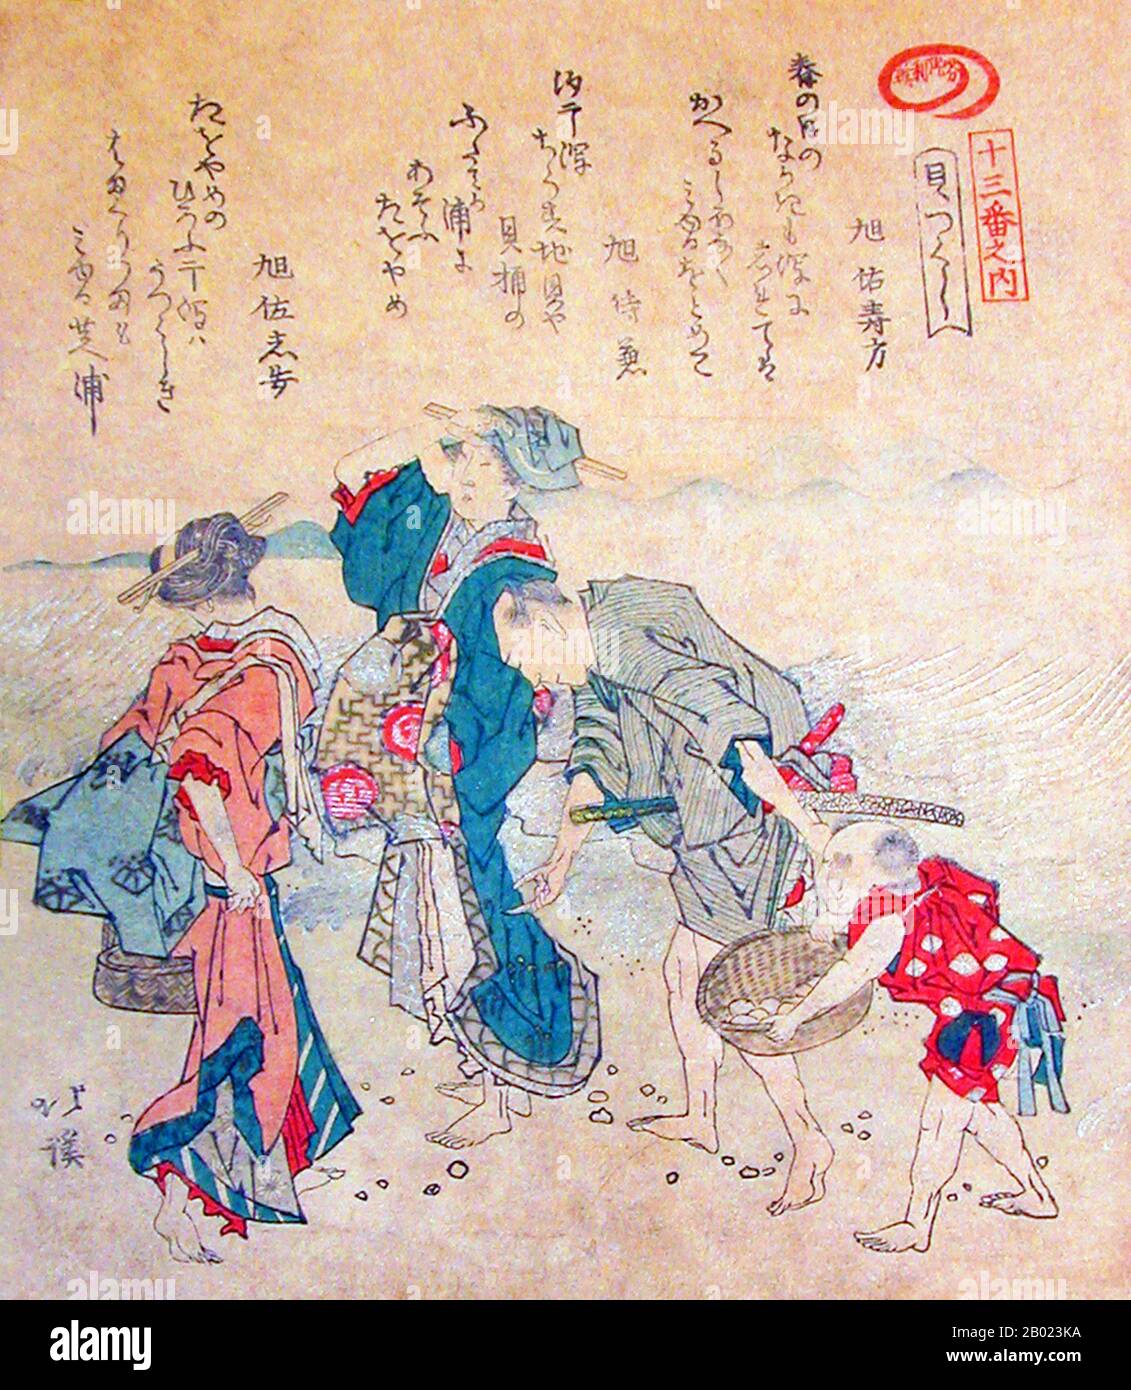 Totoya Hokkei era un illustratore di libri e stampatori giapponesi. Inizialmente studiò pittura con Kano Yyen (1735-1808), capo del ramo di Kobikicho della scuola di Kano e okaeshi (pittore ufficiale) allo shogunato di Tokugawa. Insieme a Teisai Hokuba (1771-1844), Hokkei era uno dei migliori studenti di Katsushika Hokusai. Foto Stock